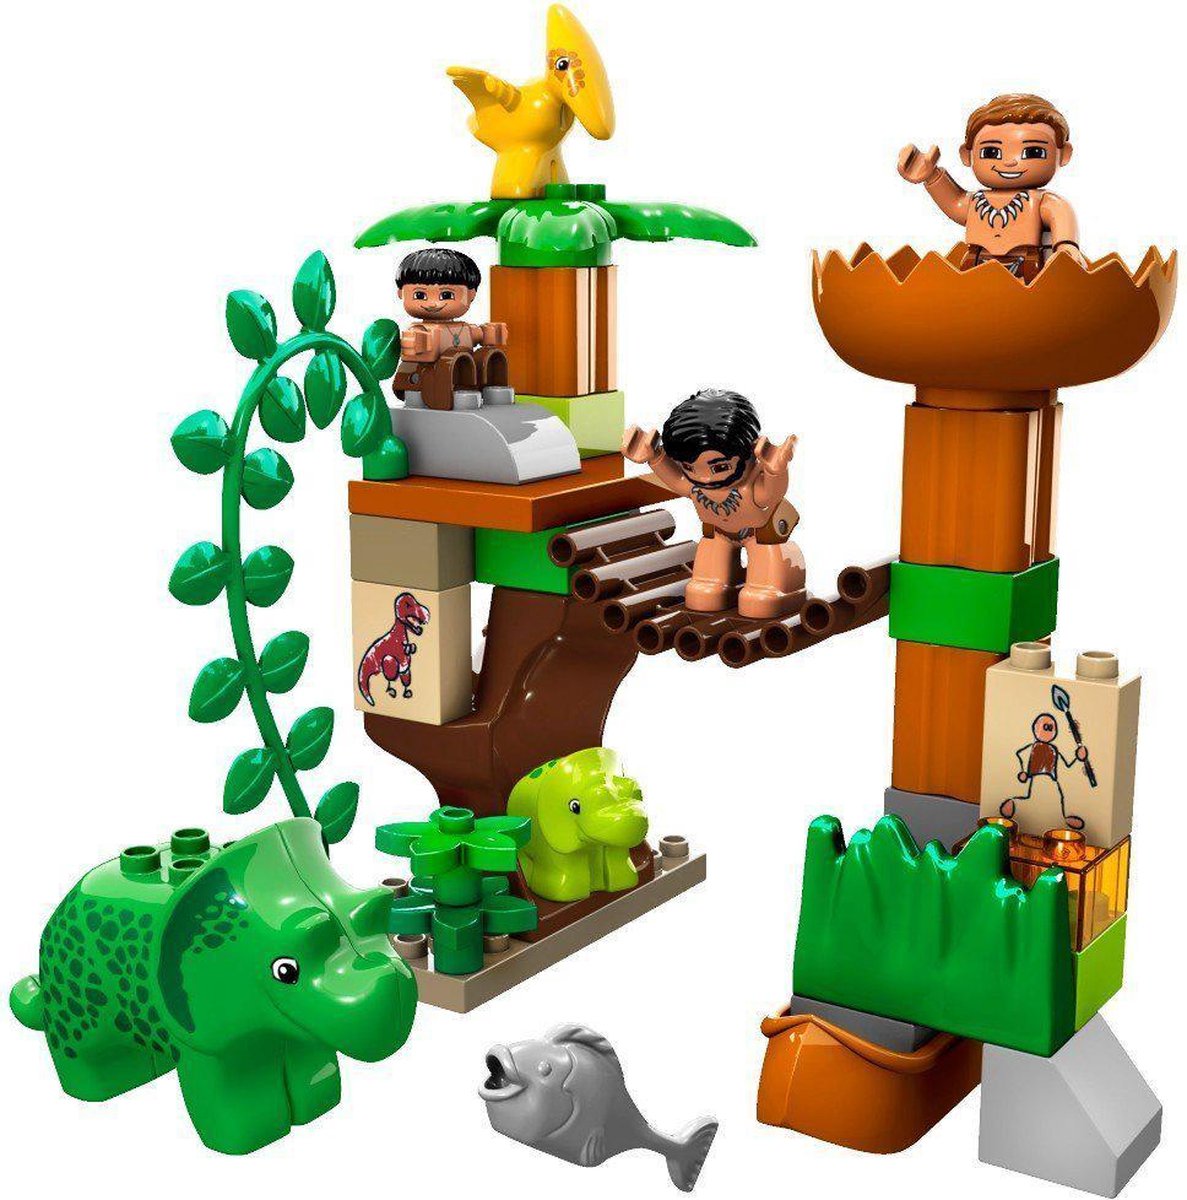 LEGO Duplo Dino De grote Dinowereld - 5598 | bol.com